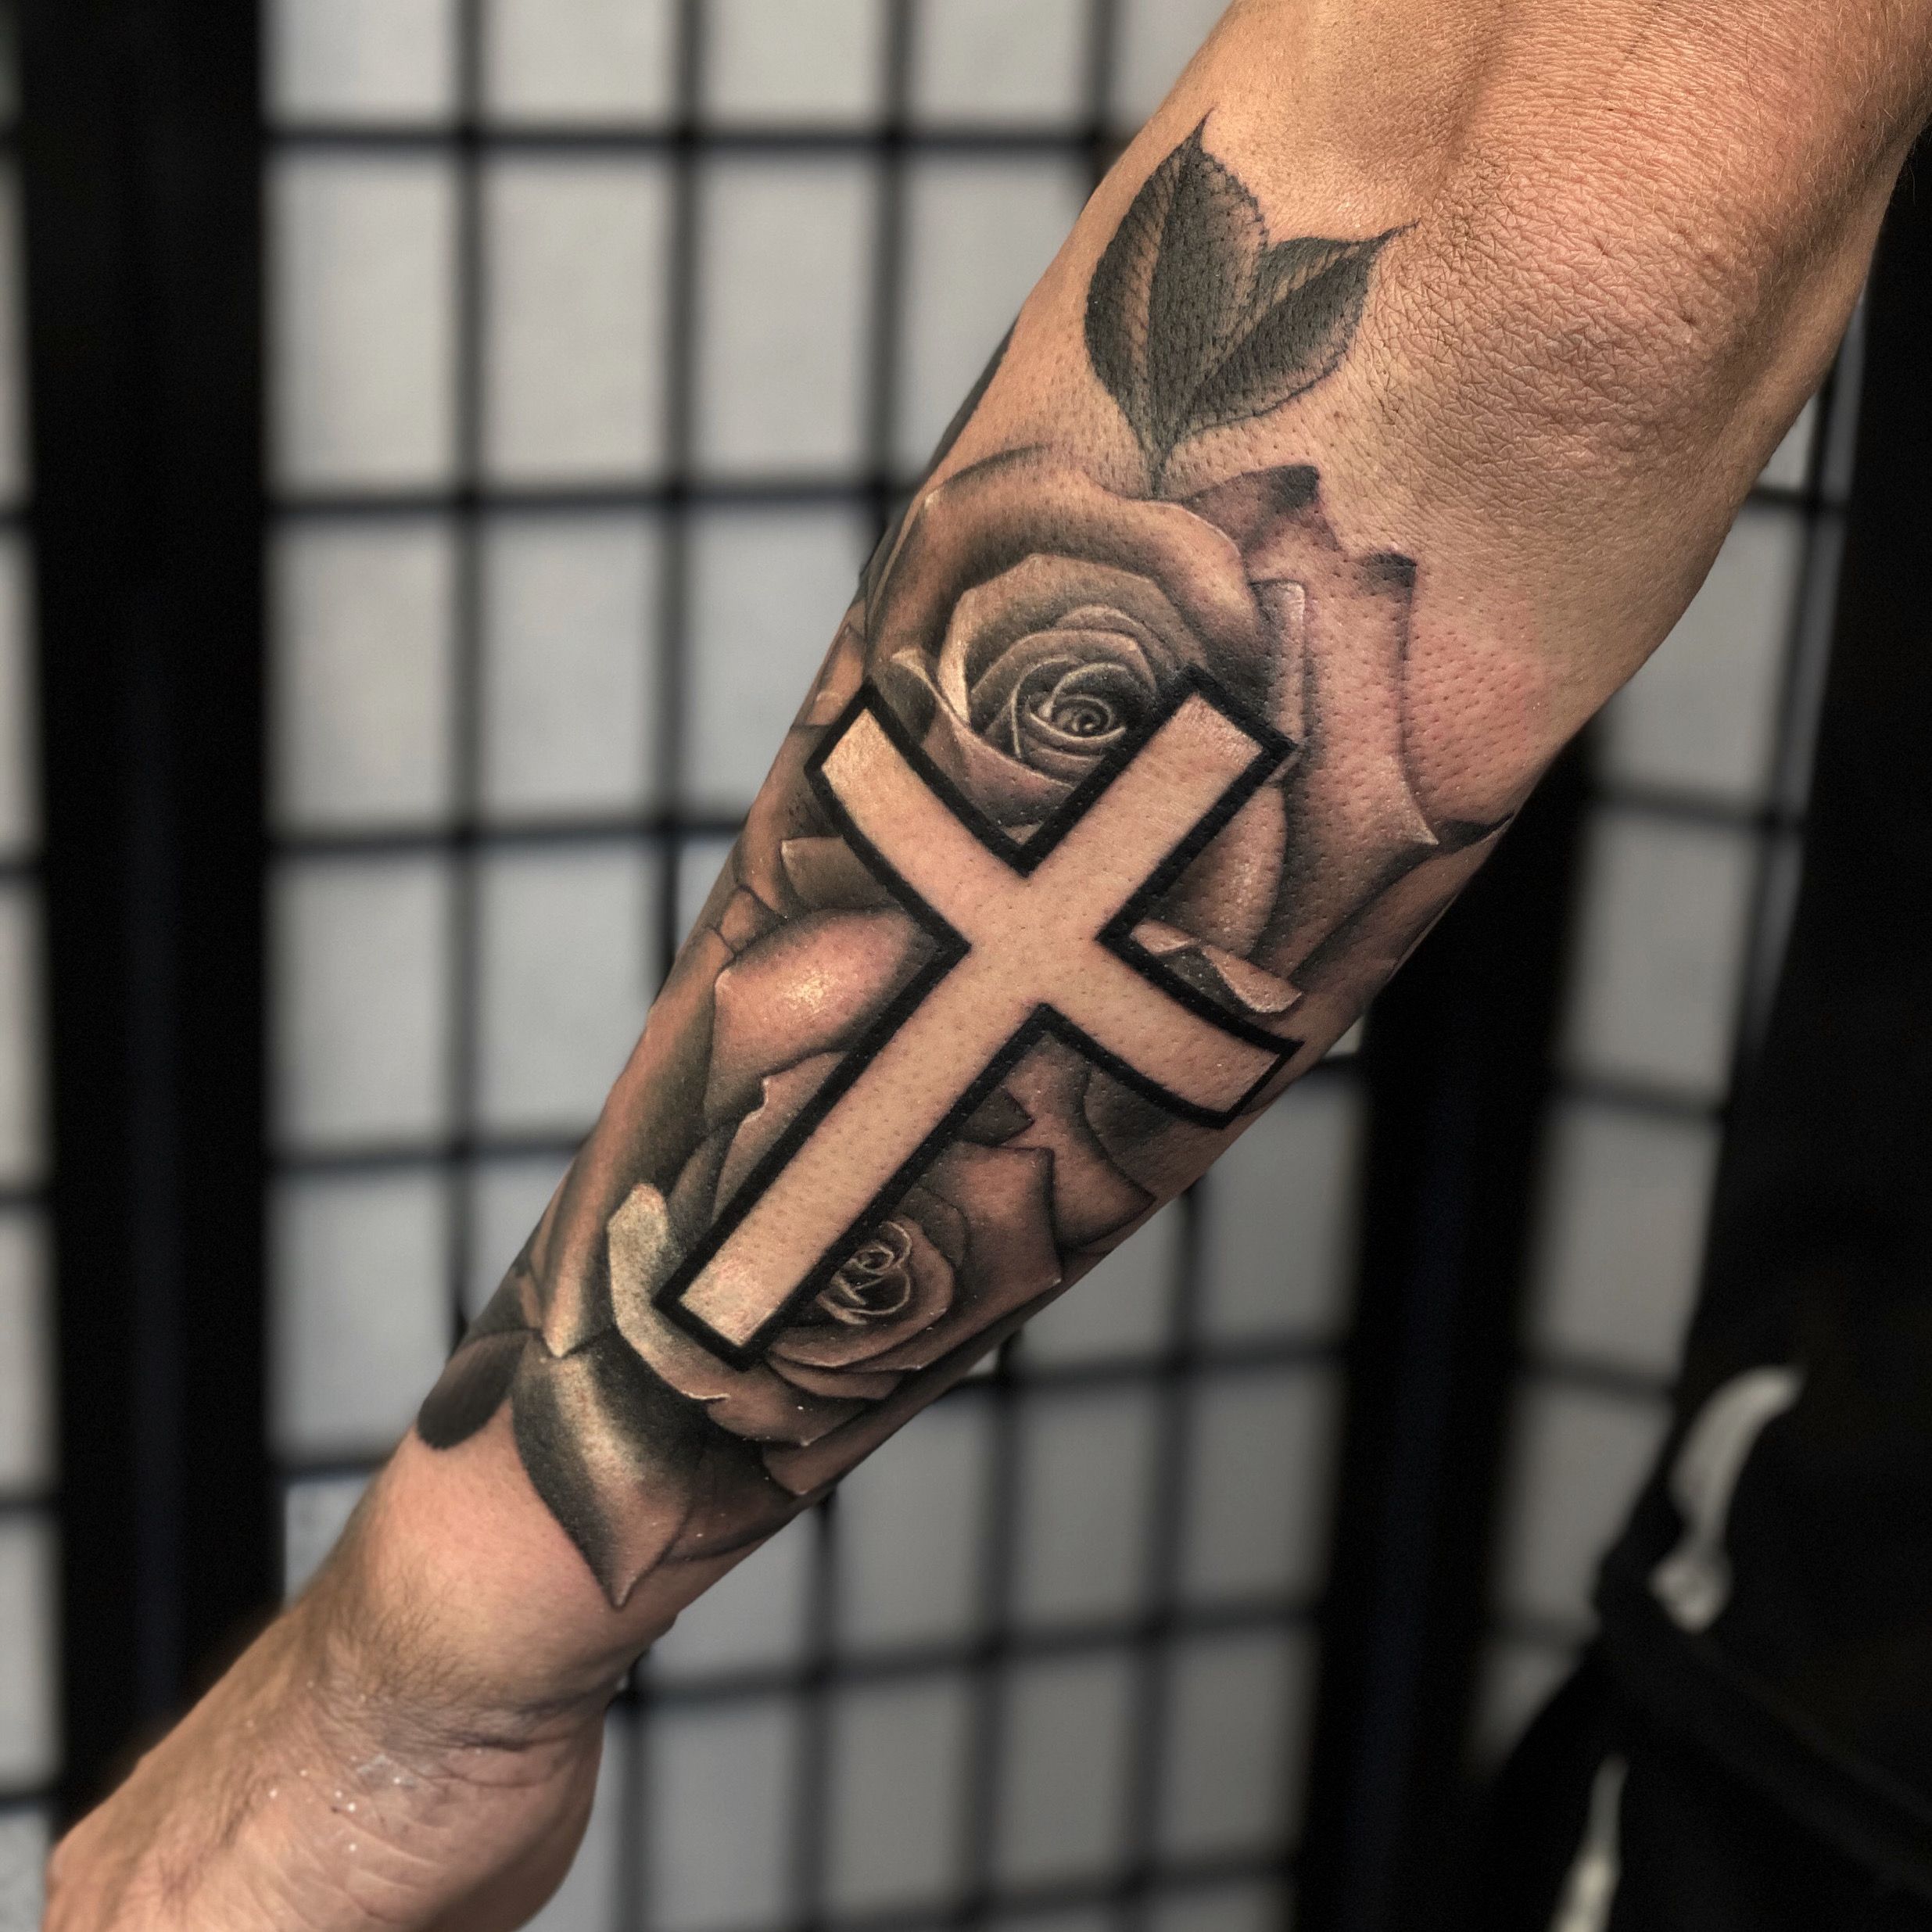 Aldo Rodriguez Tattoo on Instagram Monument Tattoo Indianapolis